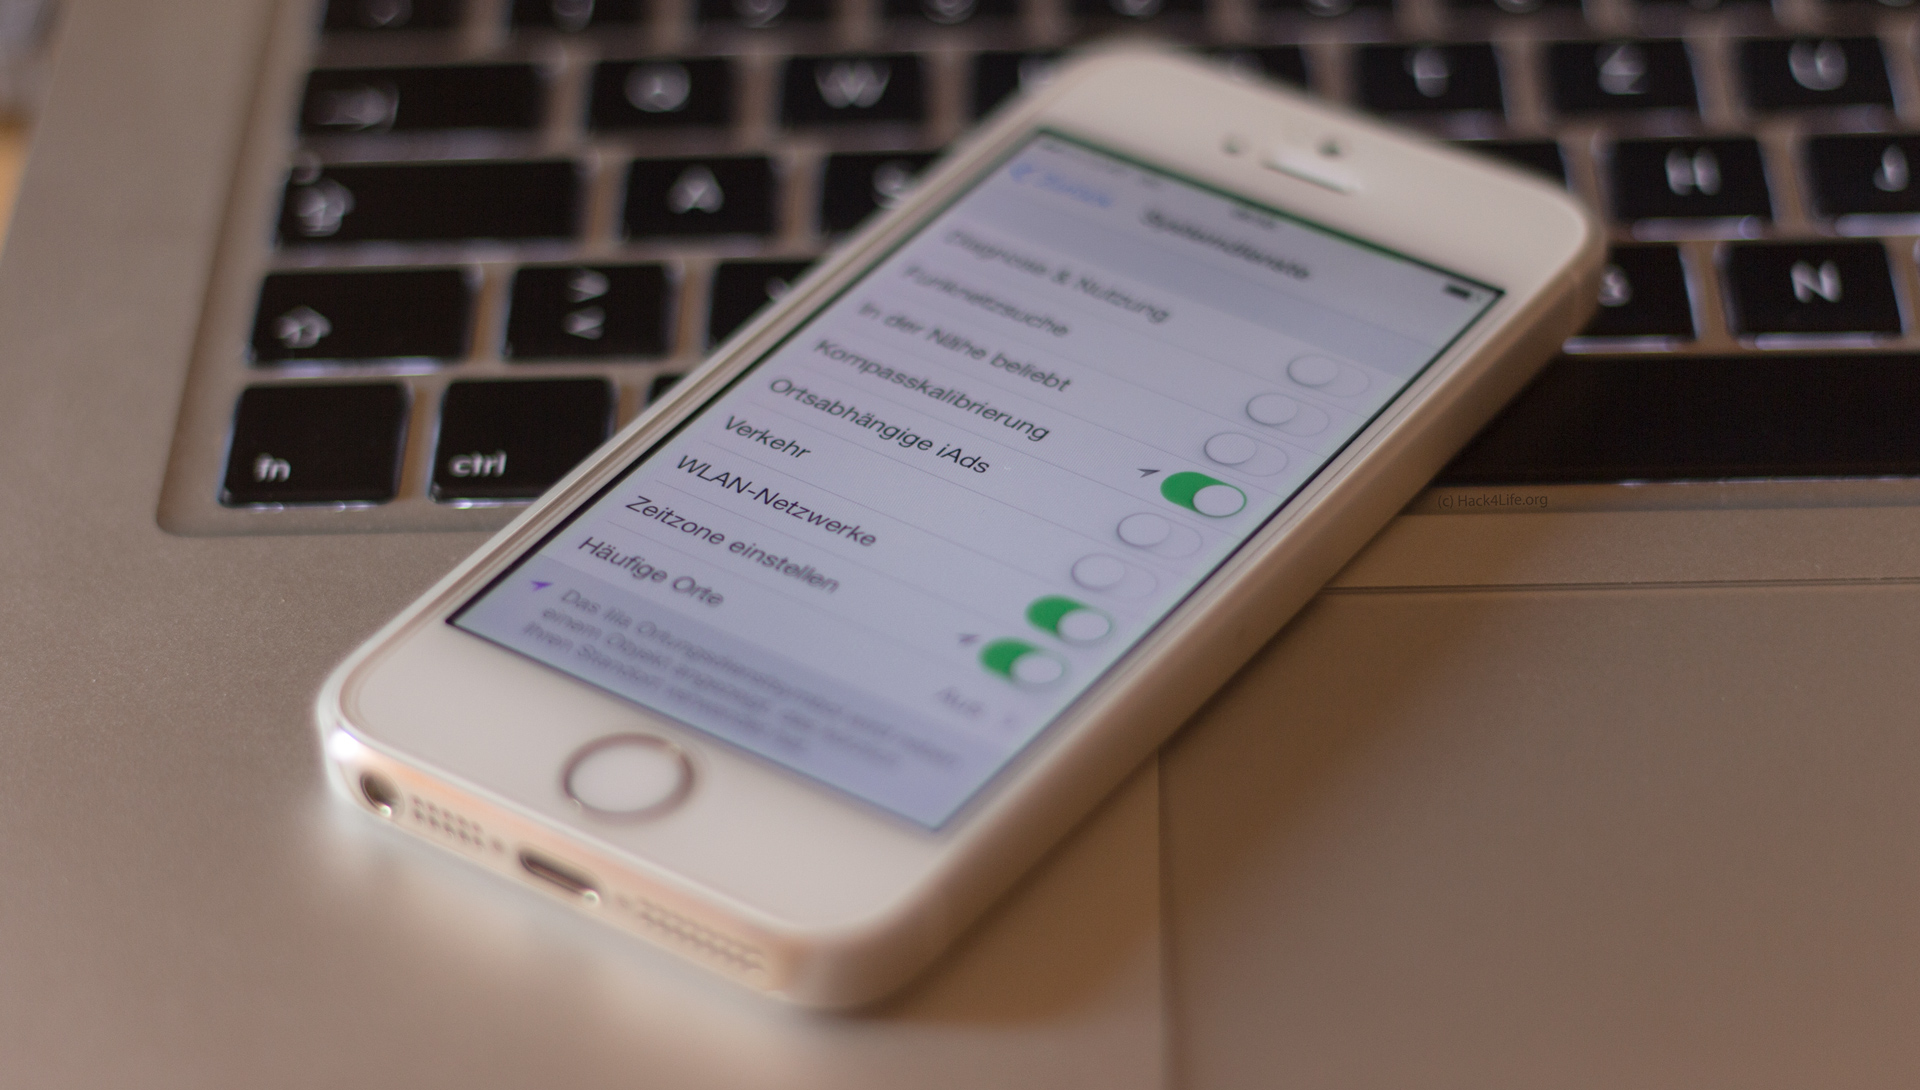 Standortgenauigkeit deaktivieren - iOS 7 Tipp von Fabian Geissler für Hack4Life